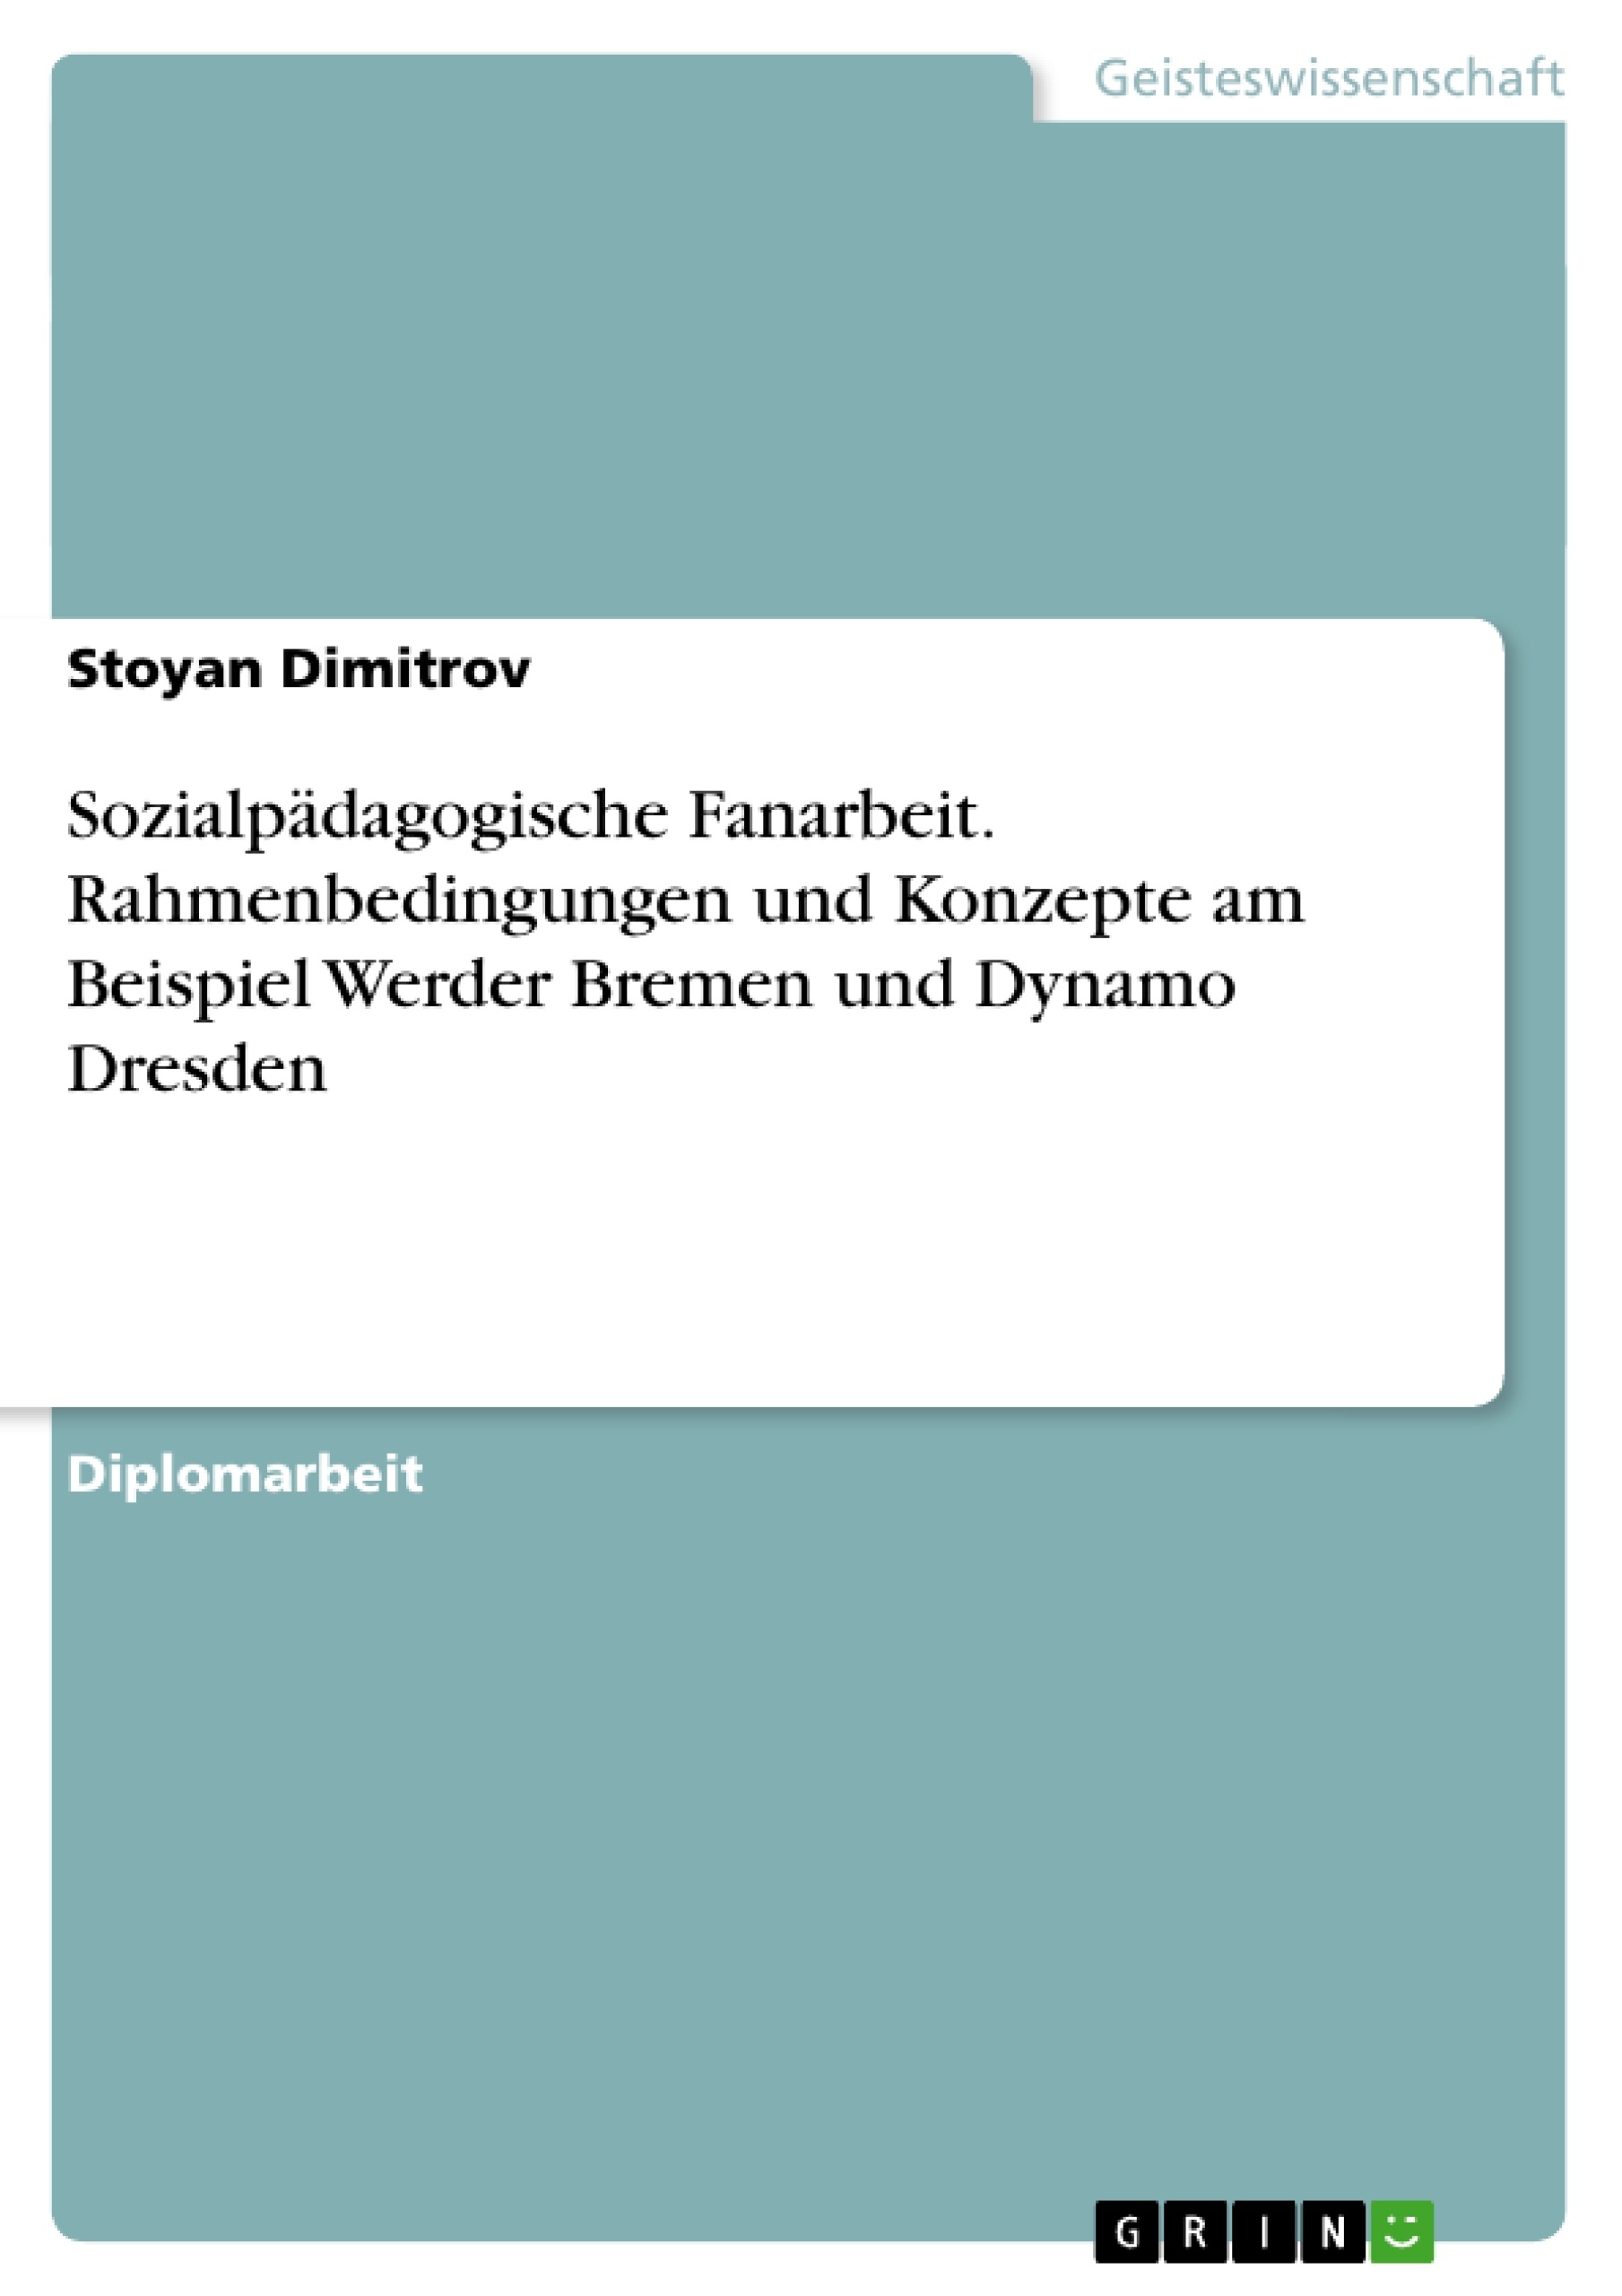 Título: Sozialpädagogische Fanarbeit. Rahmenbedingungen und Konzepte am Beispiel Werder Bremen und Dynamo Dresden